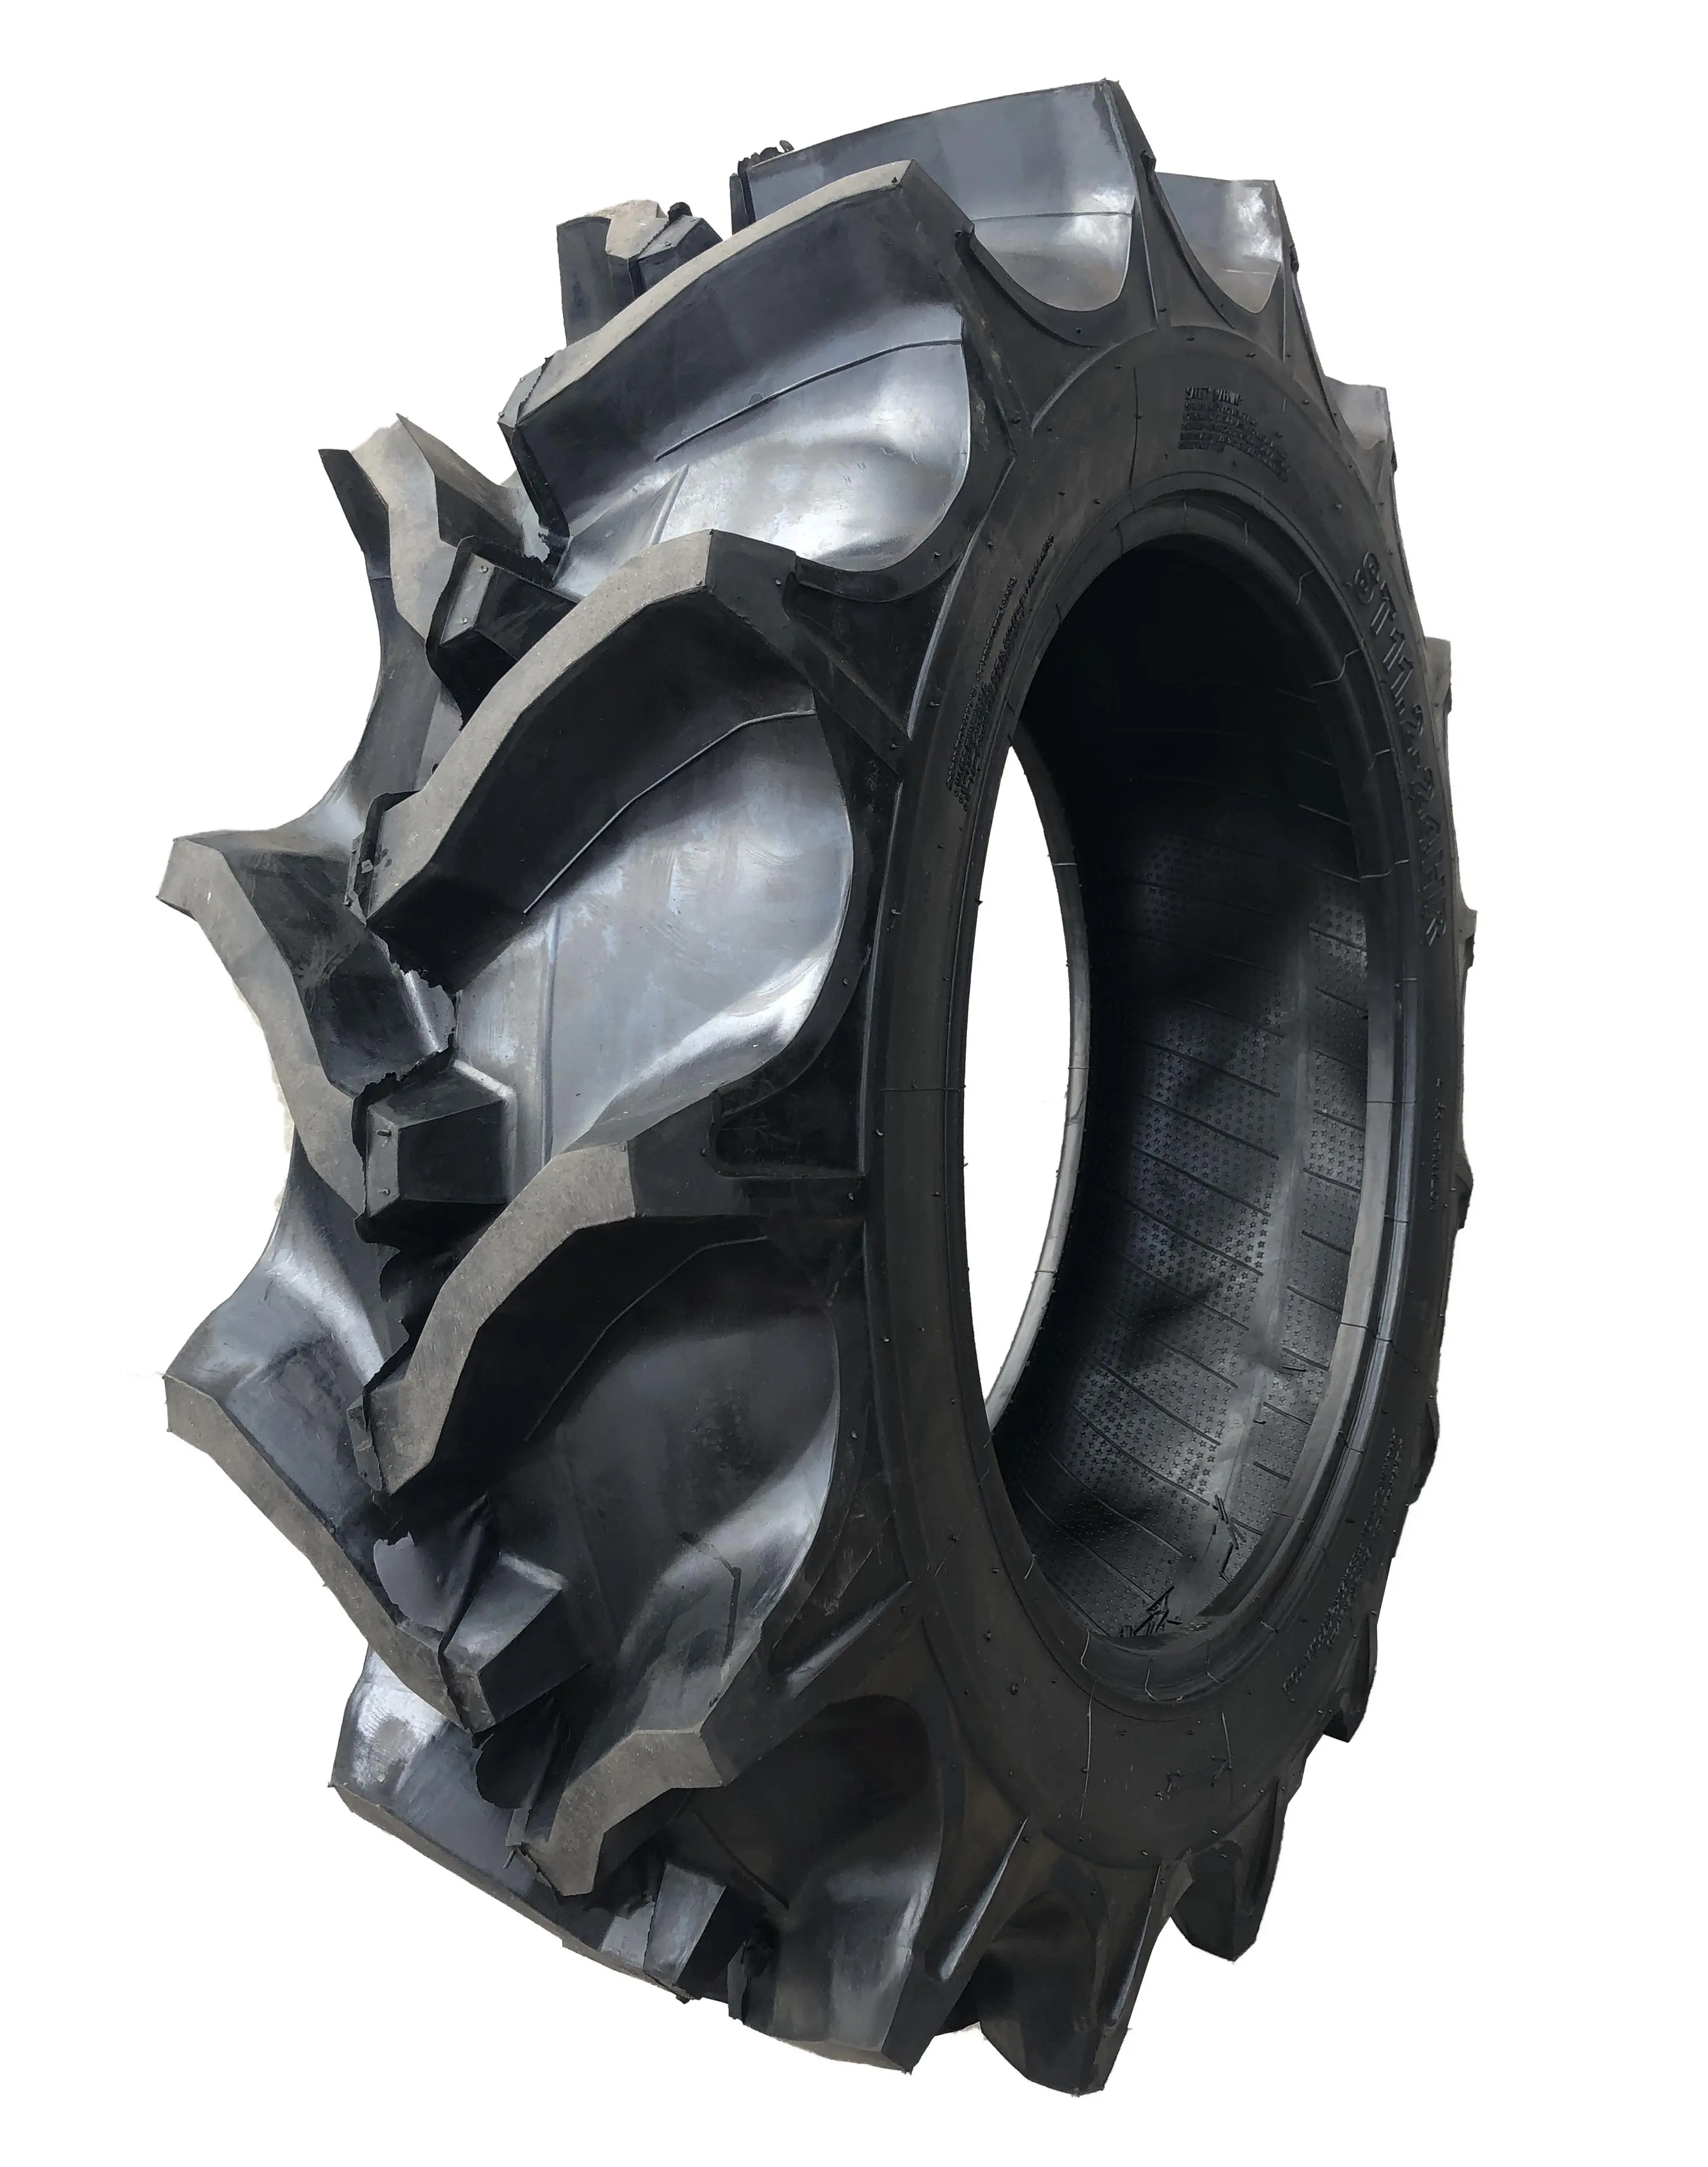 9.5-24 12.4-24 R2 판매 고품질 저렴한 농장 트랙터 타이어 중국에서 만든 천연 고무 타이어 트랙터 타이어 트랙터 타이어 14.9 28